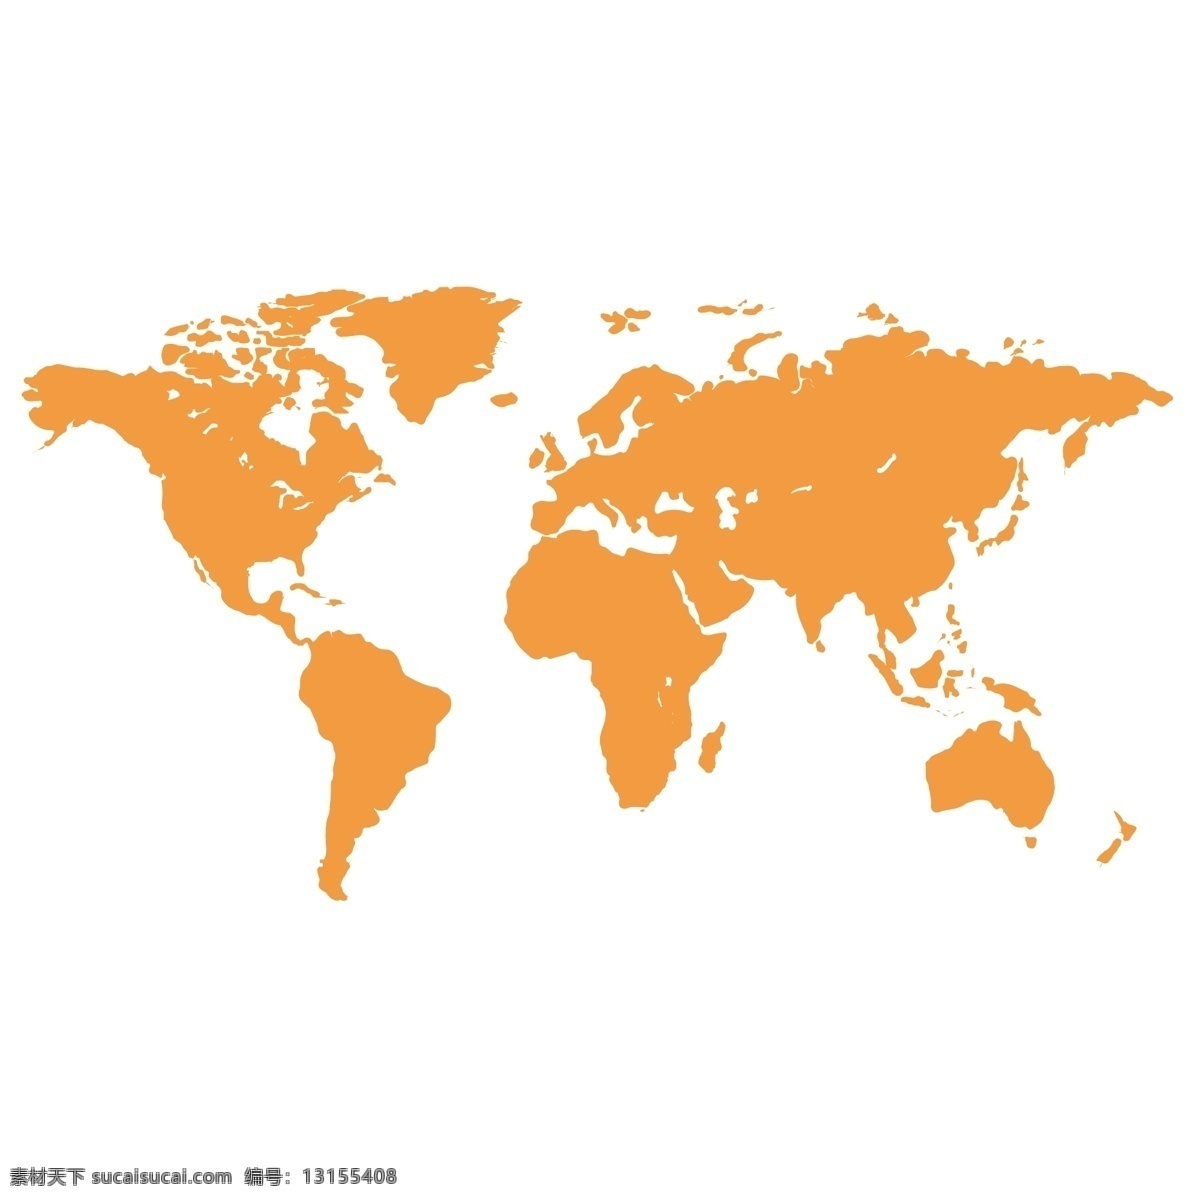 世界地图 矢量 文件 高清 世界